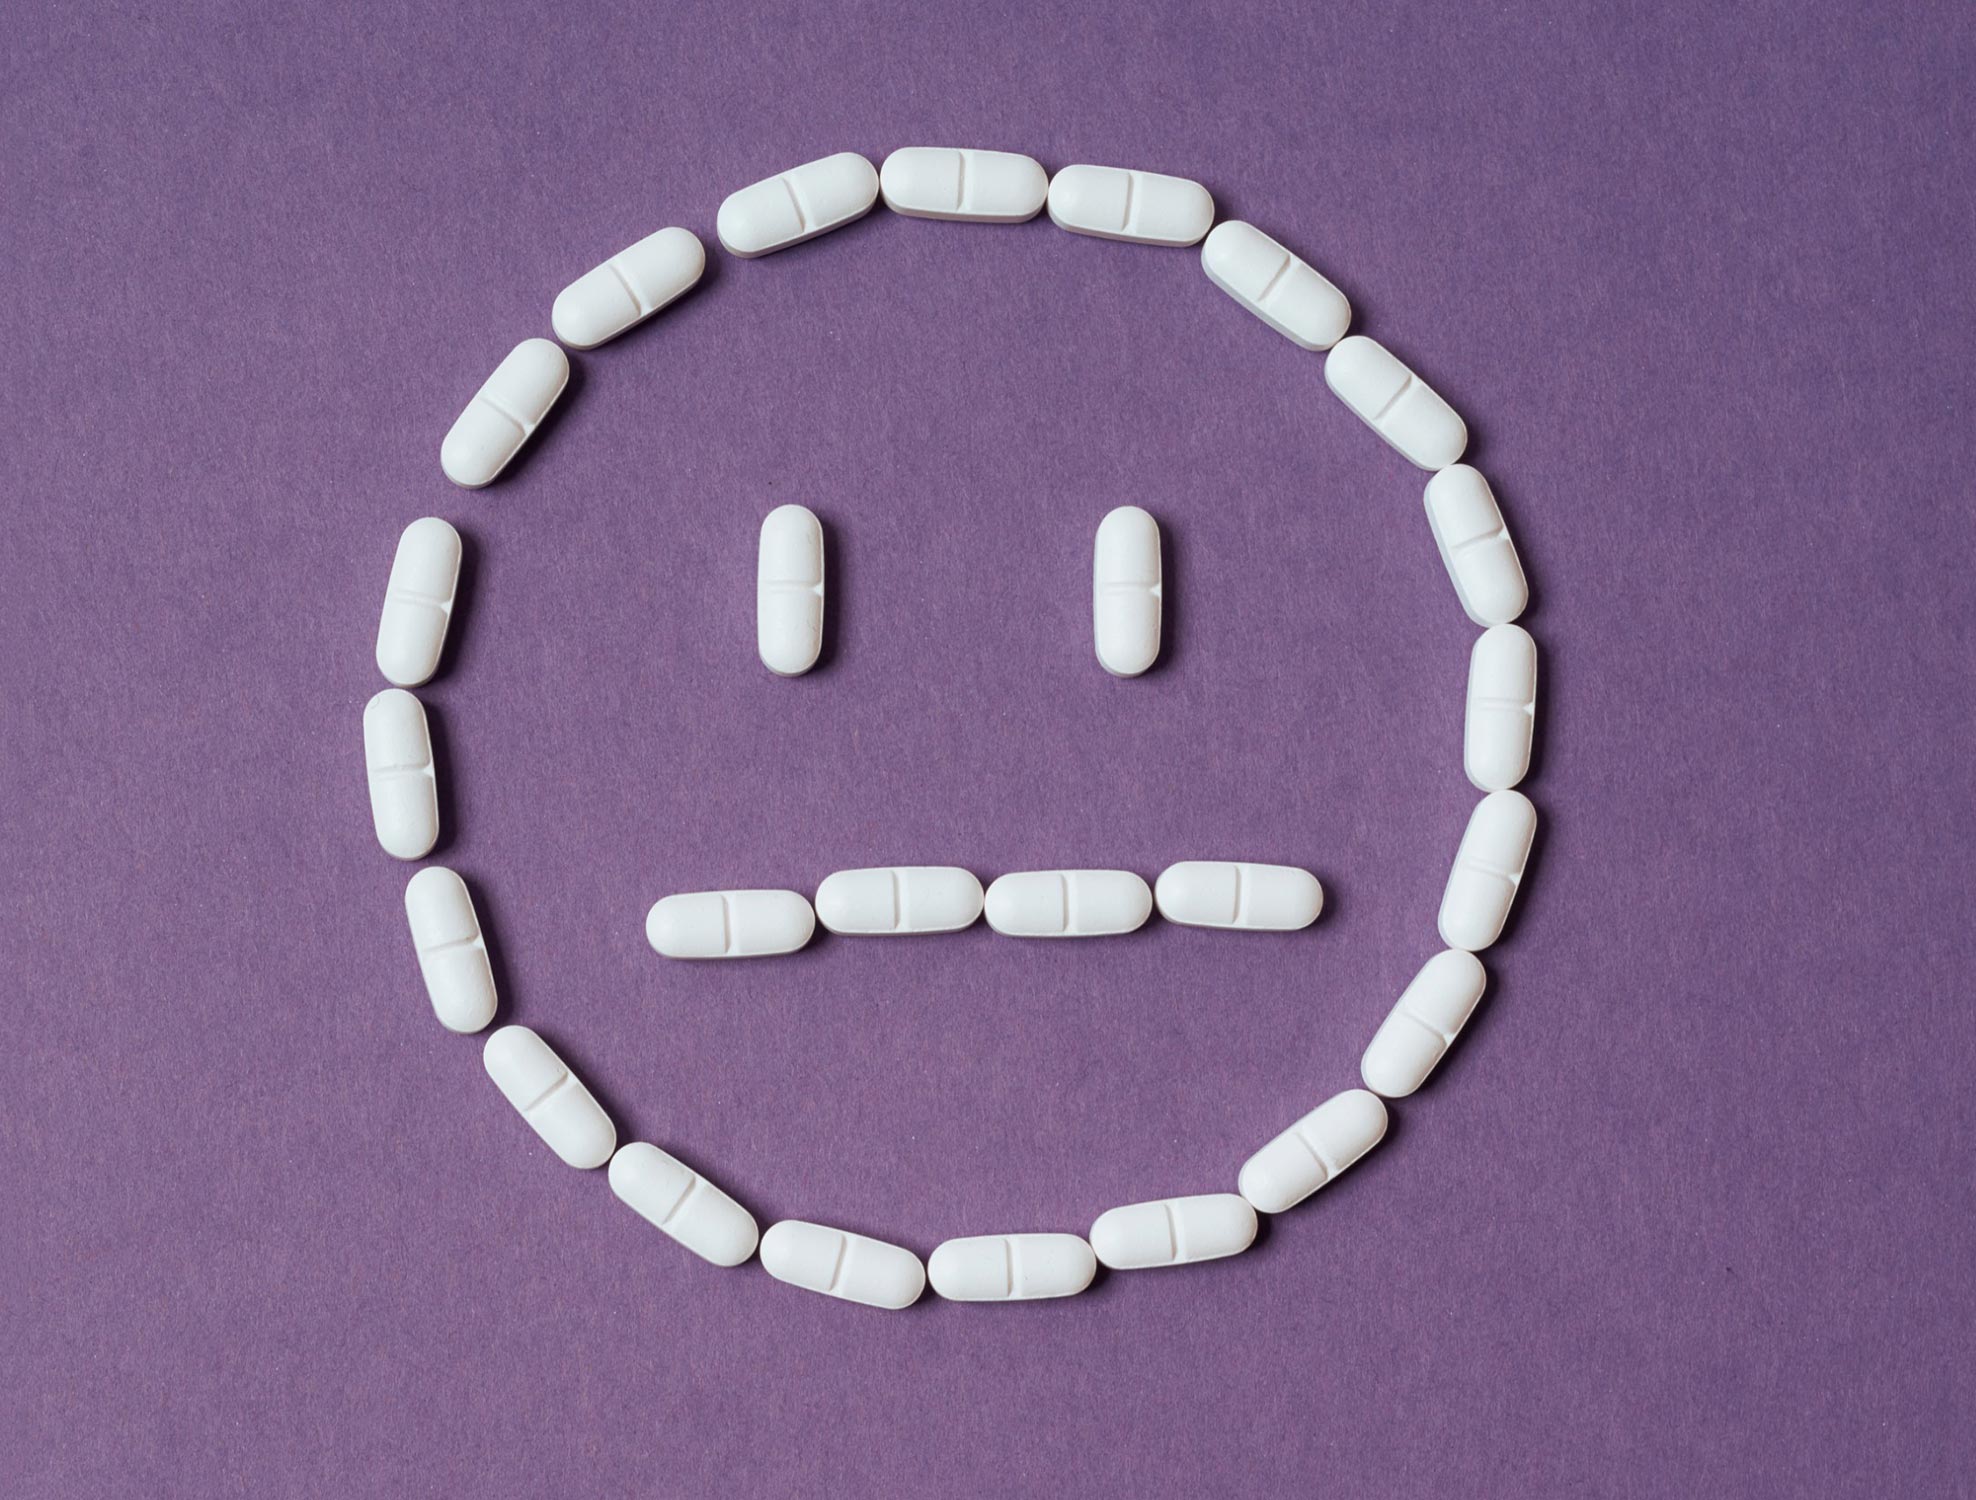 常见的抗抑郁药会导致情绪“抑制”——科学家终于找到了原因